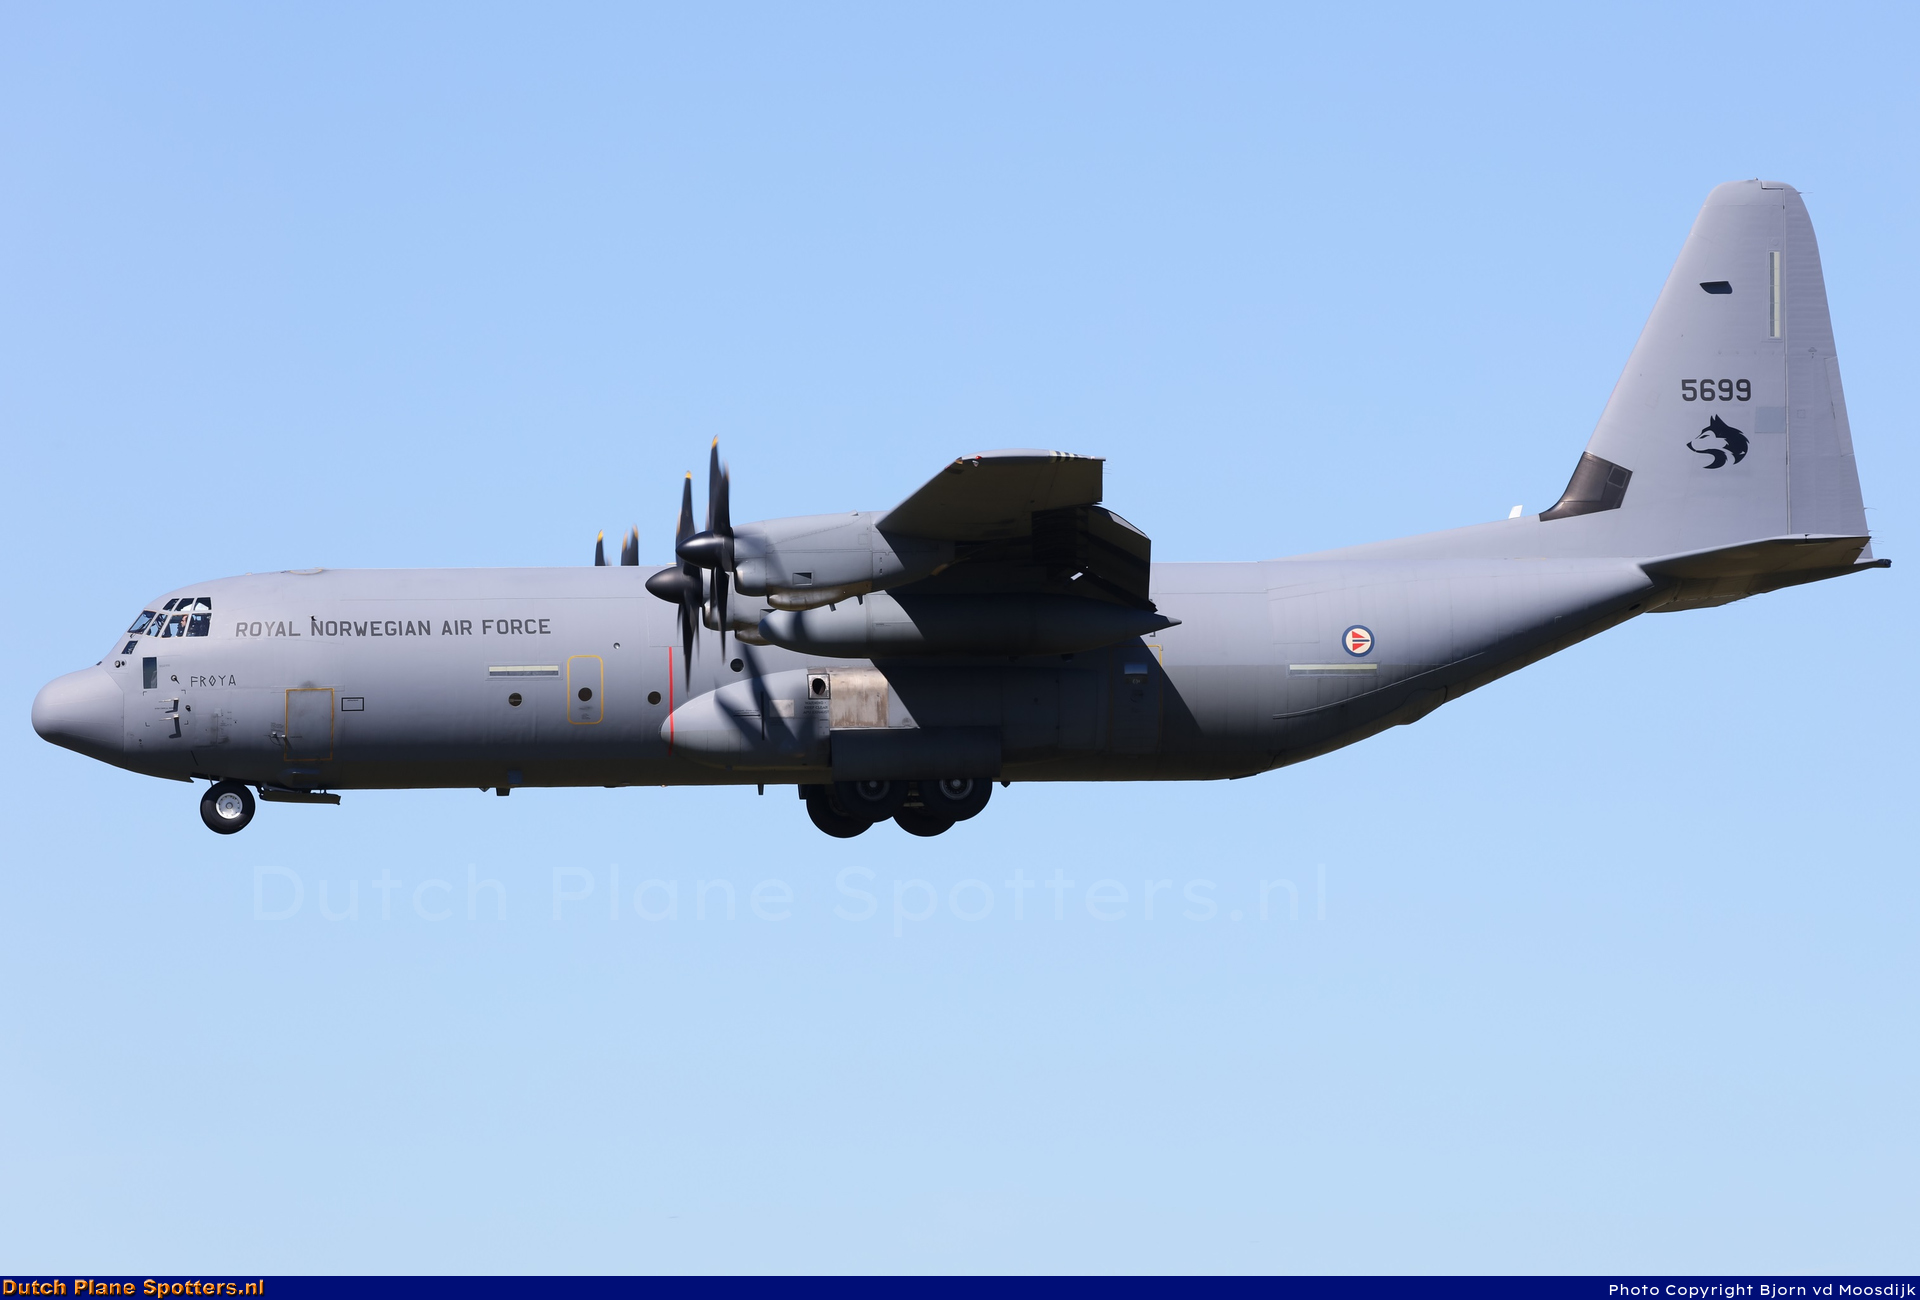 5699 Lockheed C-130J Hercules MIL - Norway Royal Air Force by Bjorn van de Moosdijk